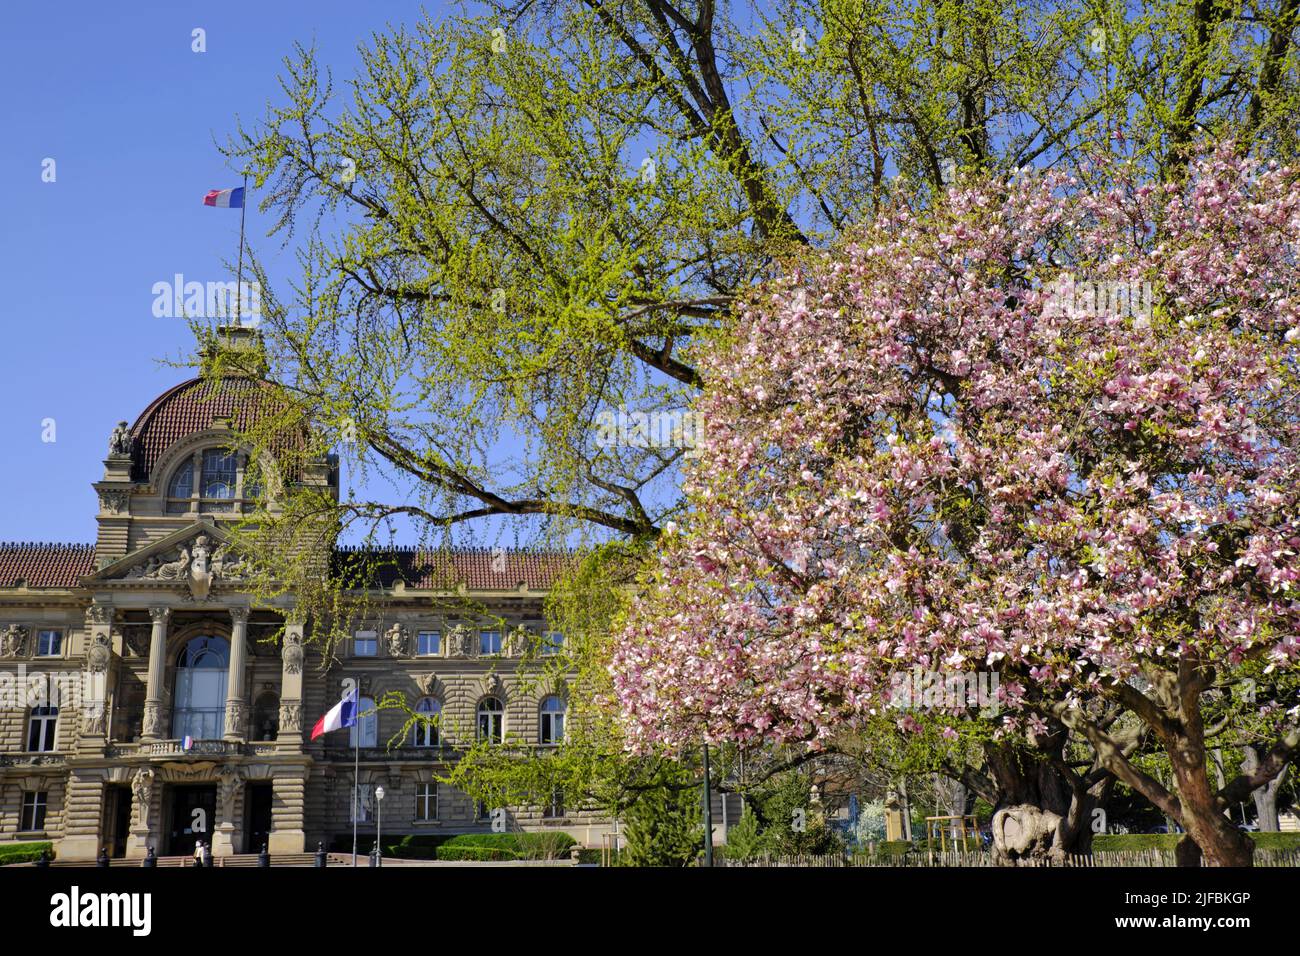 France, Bas Rhin, Strasbourg, Neustadt classé au patrimoine mondial de l'UNESCO, place de la République, Palais du Rhin construit à la fin du 19th siècle, magnolia, printemps Banque D'Images